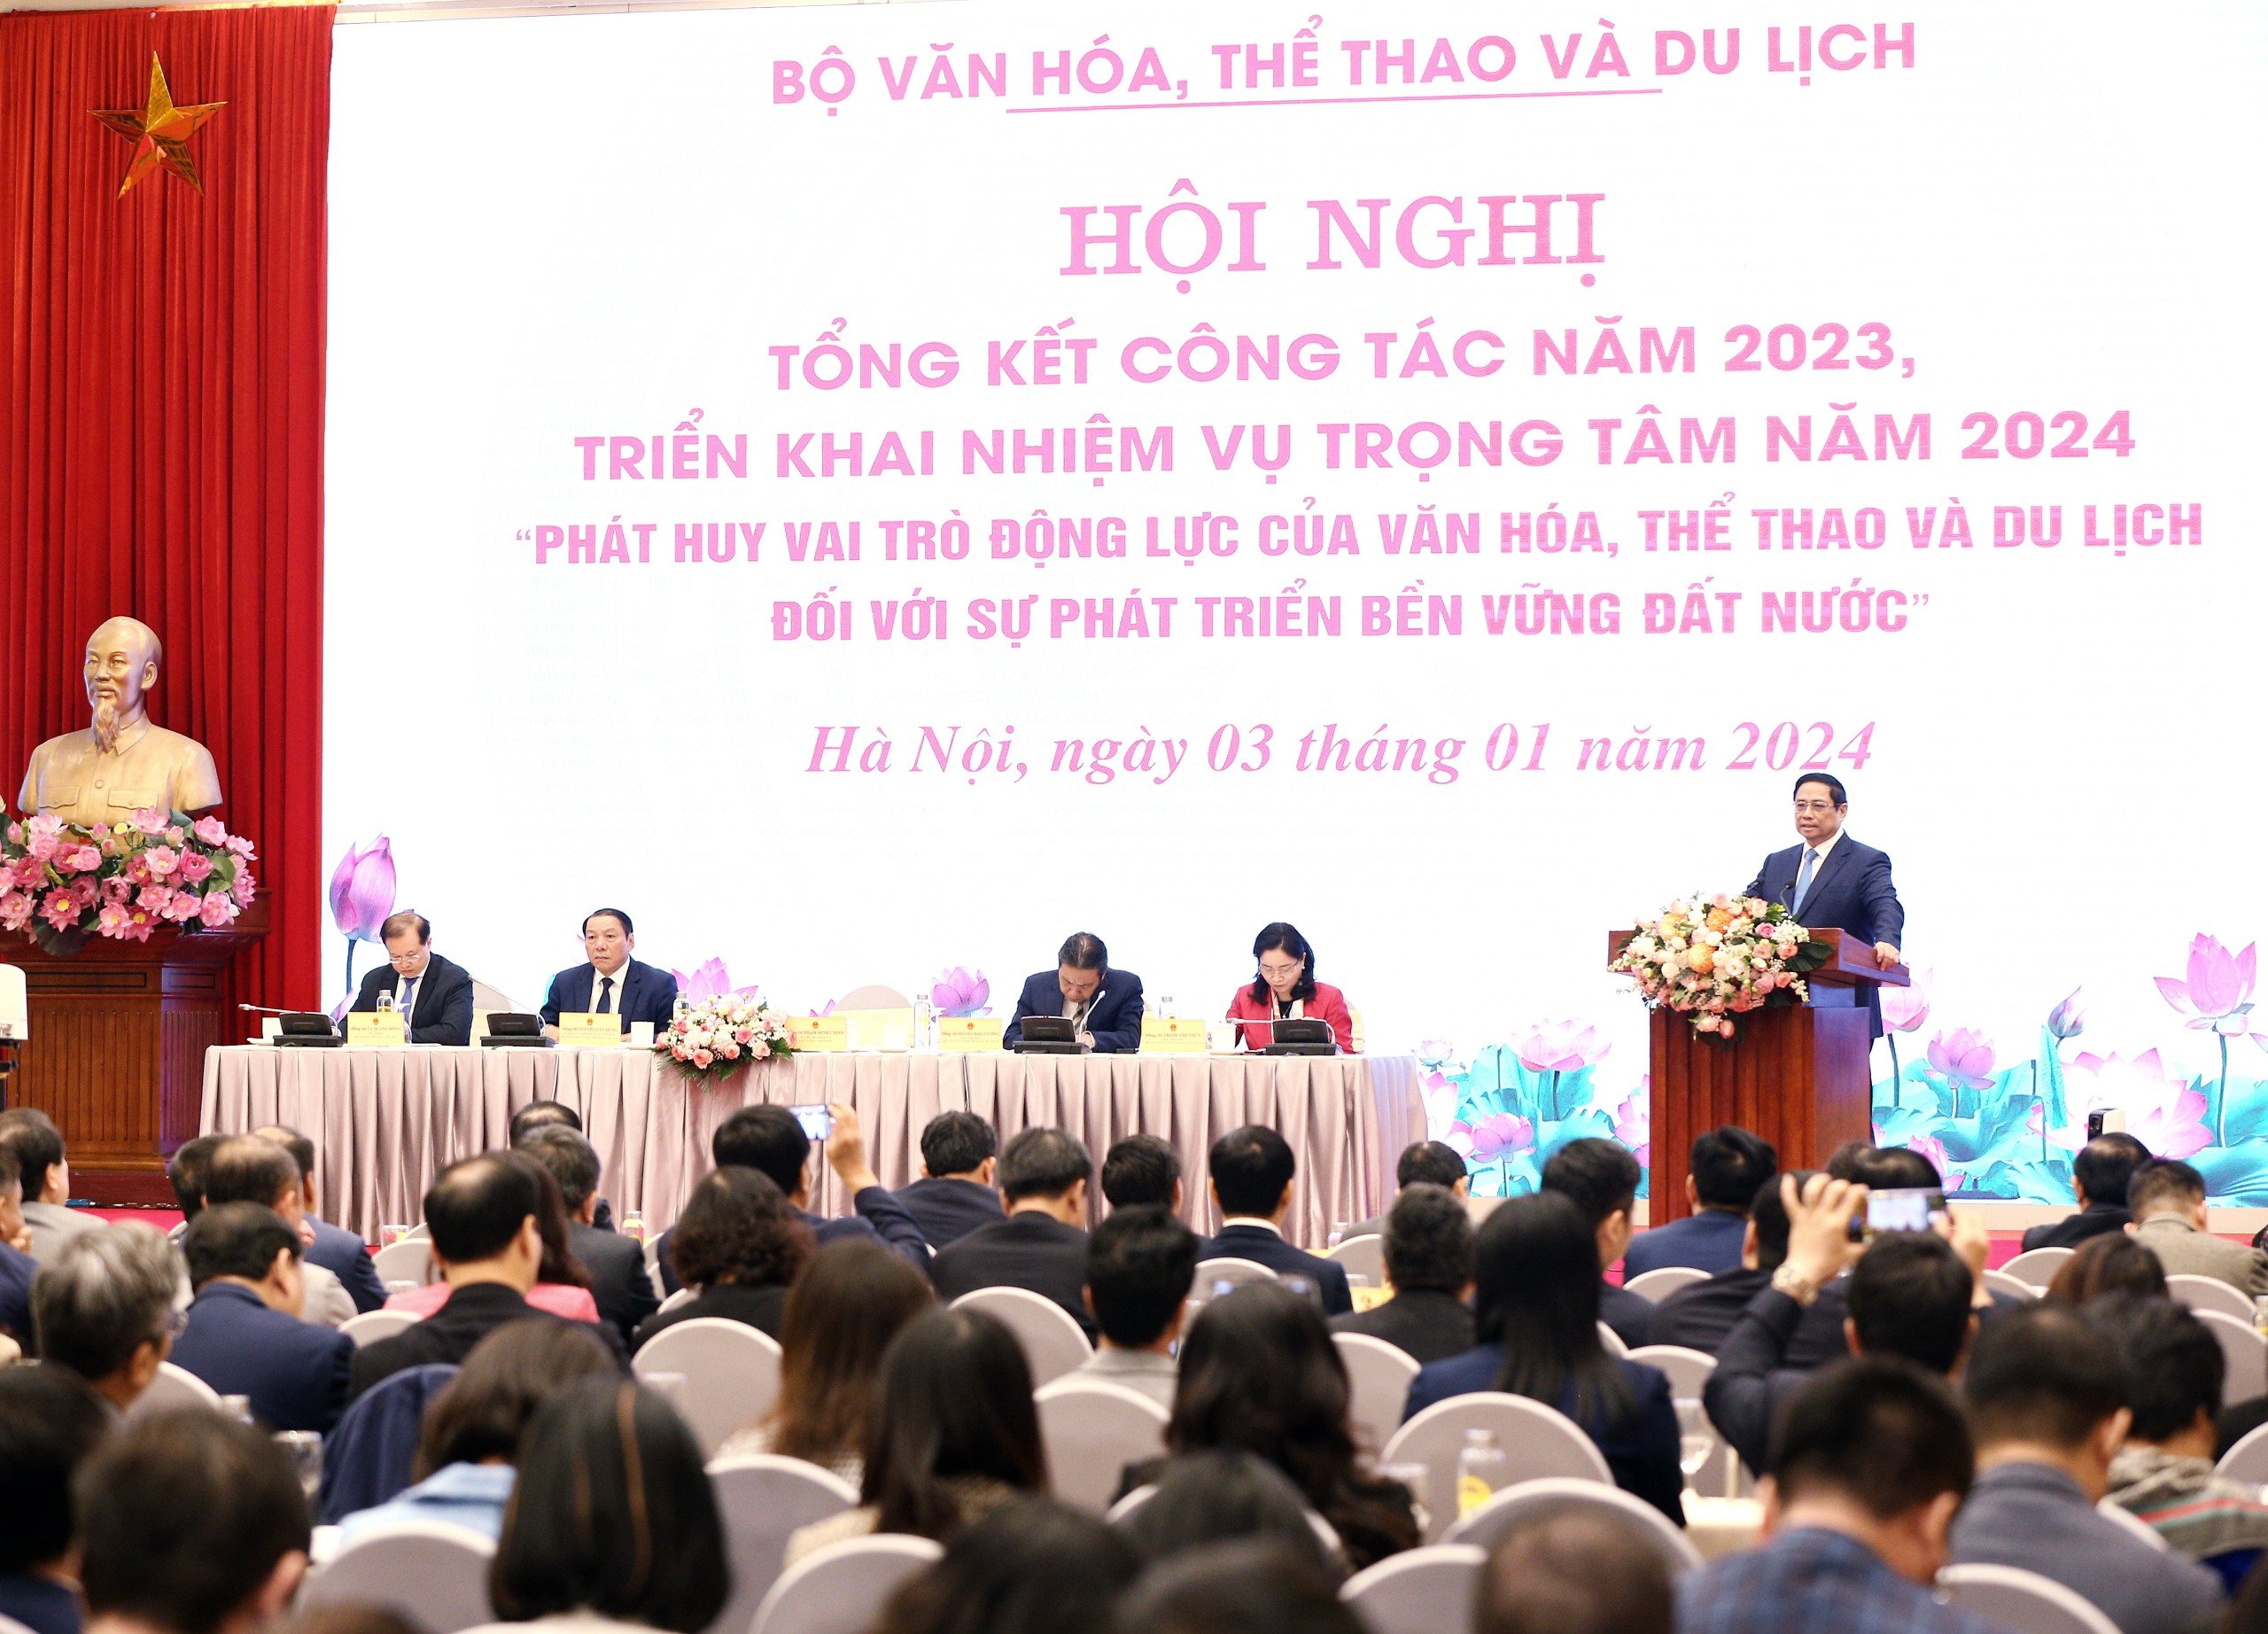 Hội nghị Tổng kết công tác năm 2023, triển khai nhiệm vụ trong tâm năm 2024 Bộ Văn hóa, Thể thao và Du lịch